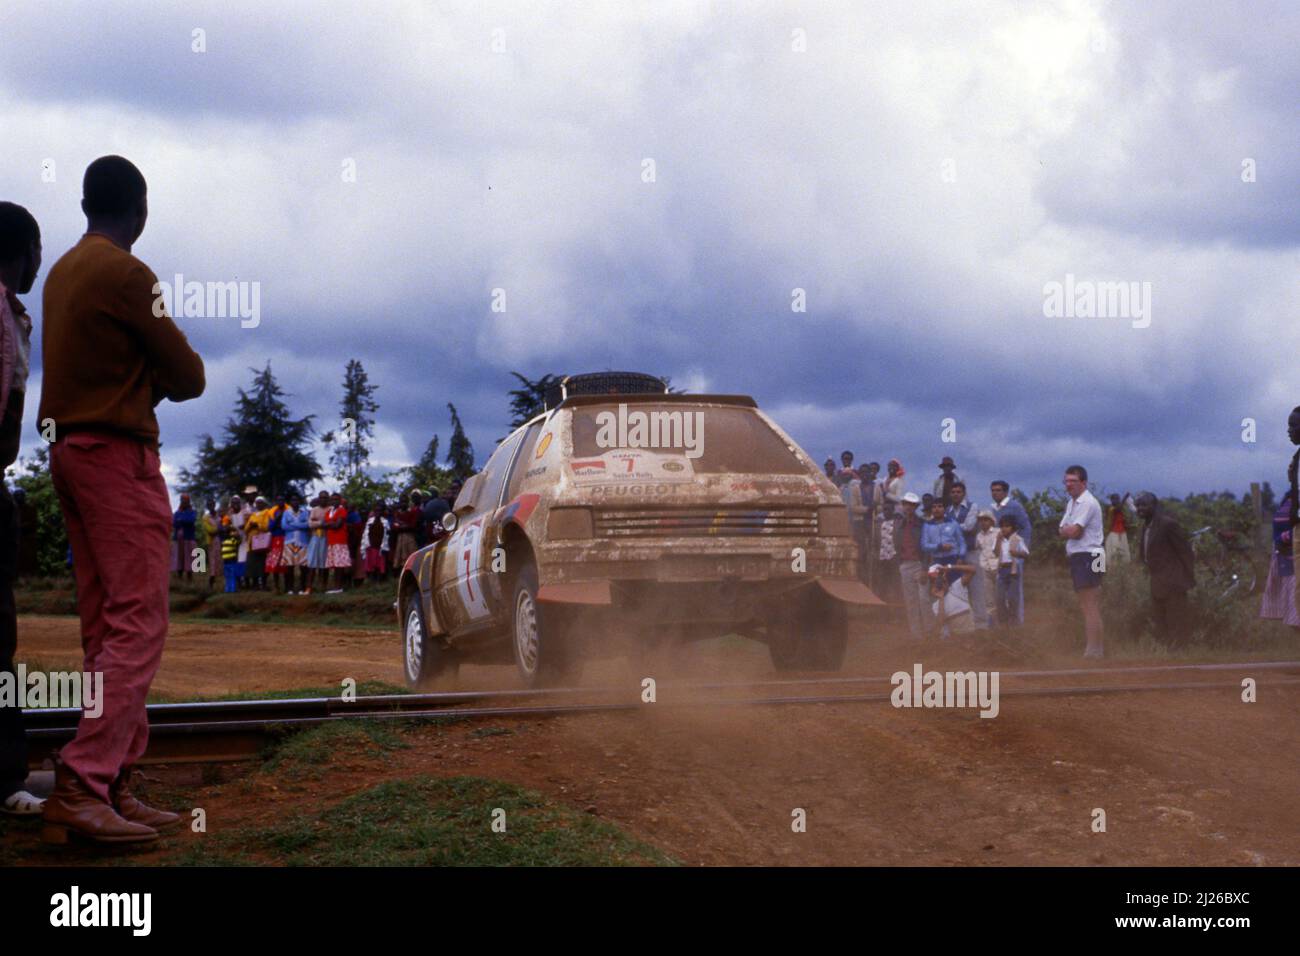 Ari Vatanen (FIN) Terry Harryman (GBR) Peugeot 205 Turbo 16 Peugeot Talbot Sport Stockfoto